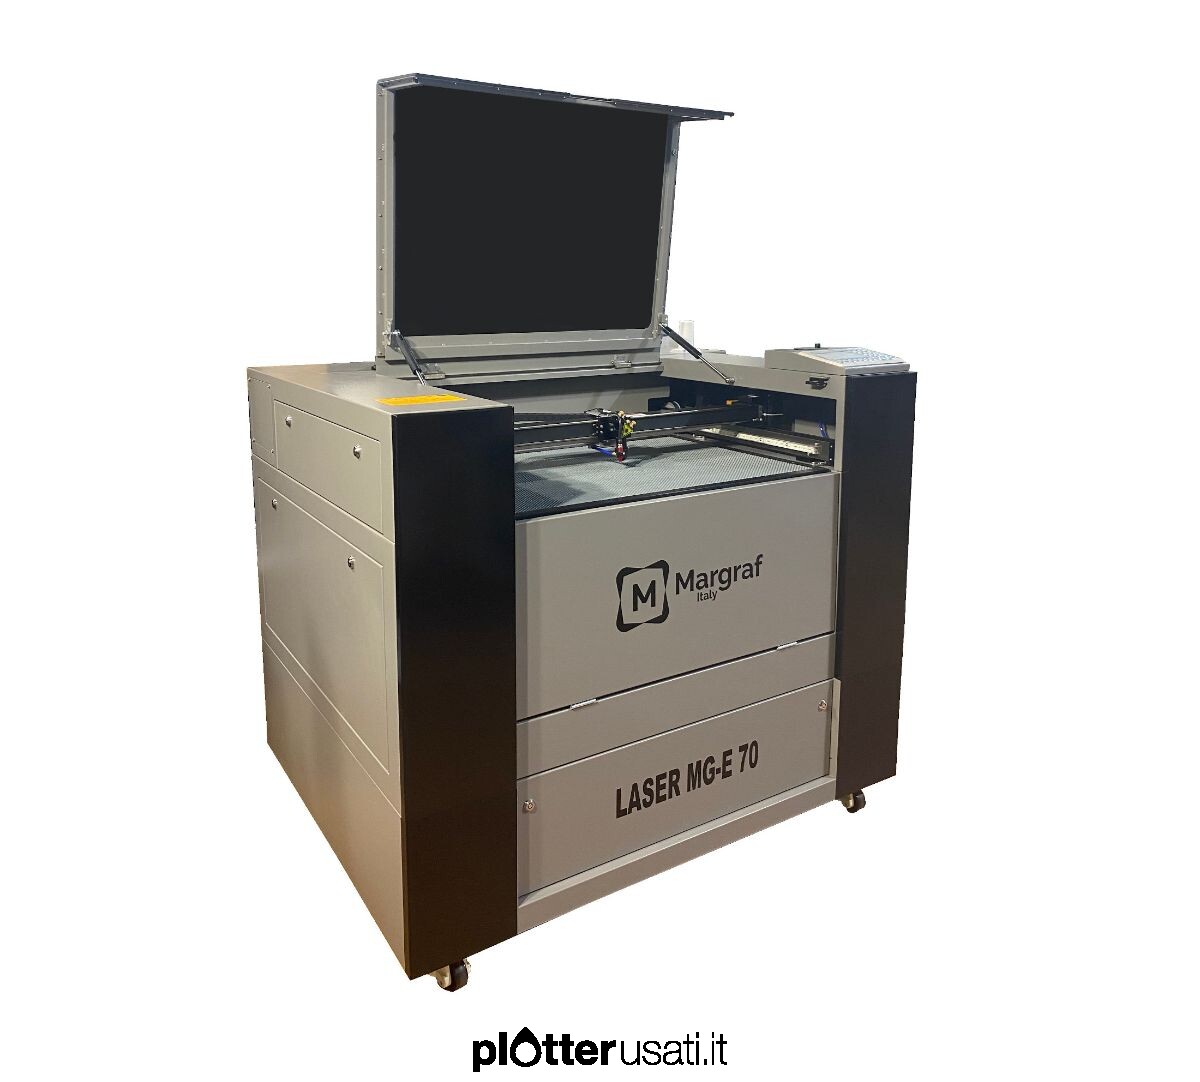 Incisore Laser CO2 - Incisori Laser - Toscana - Plotterusati